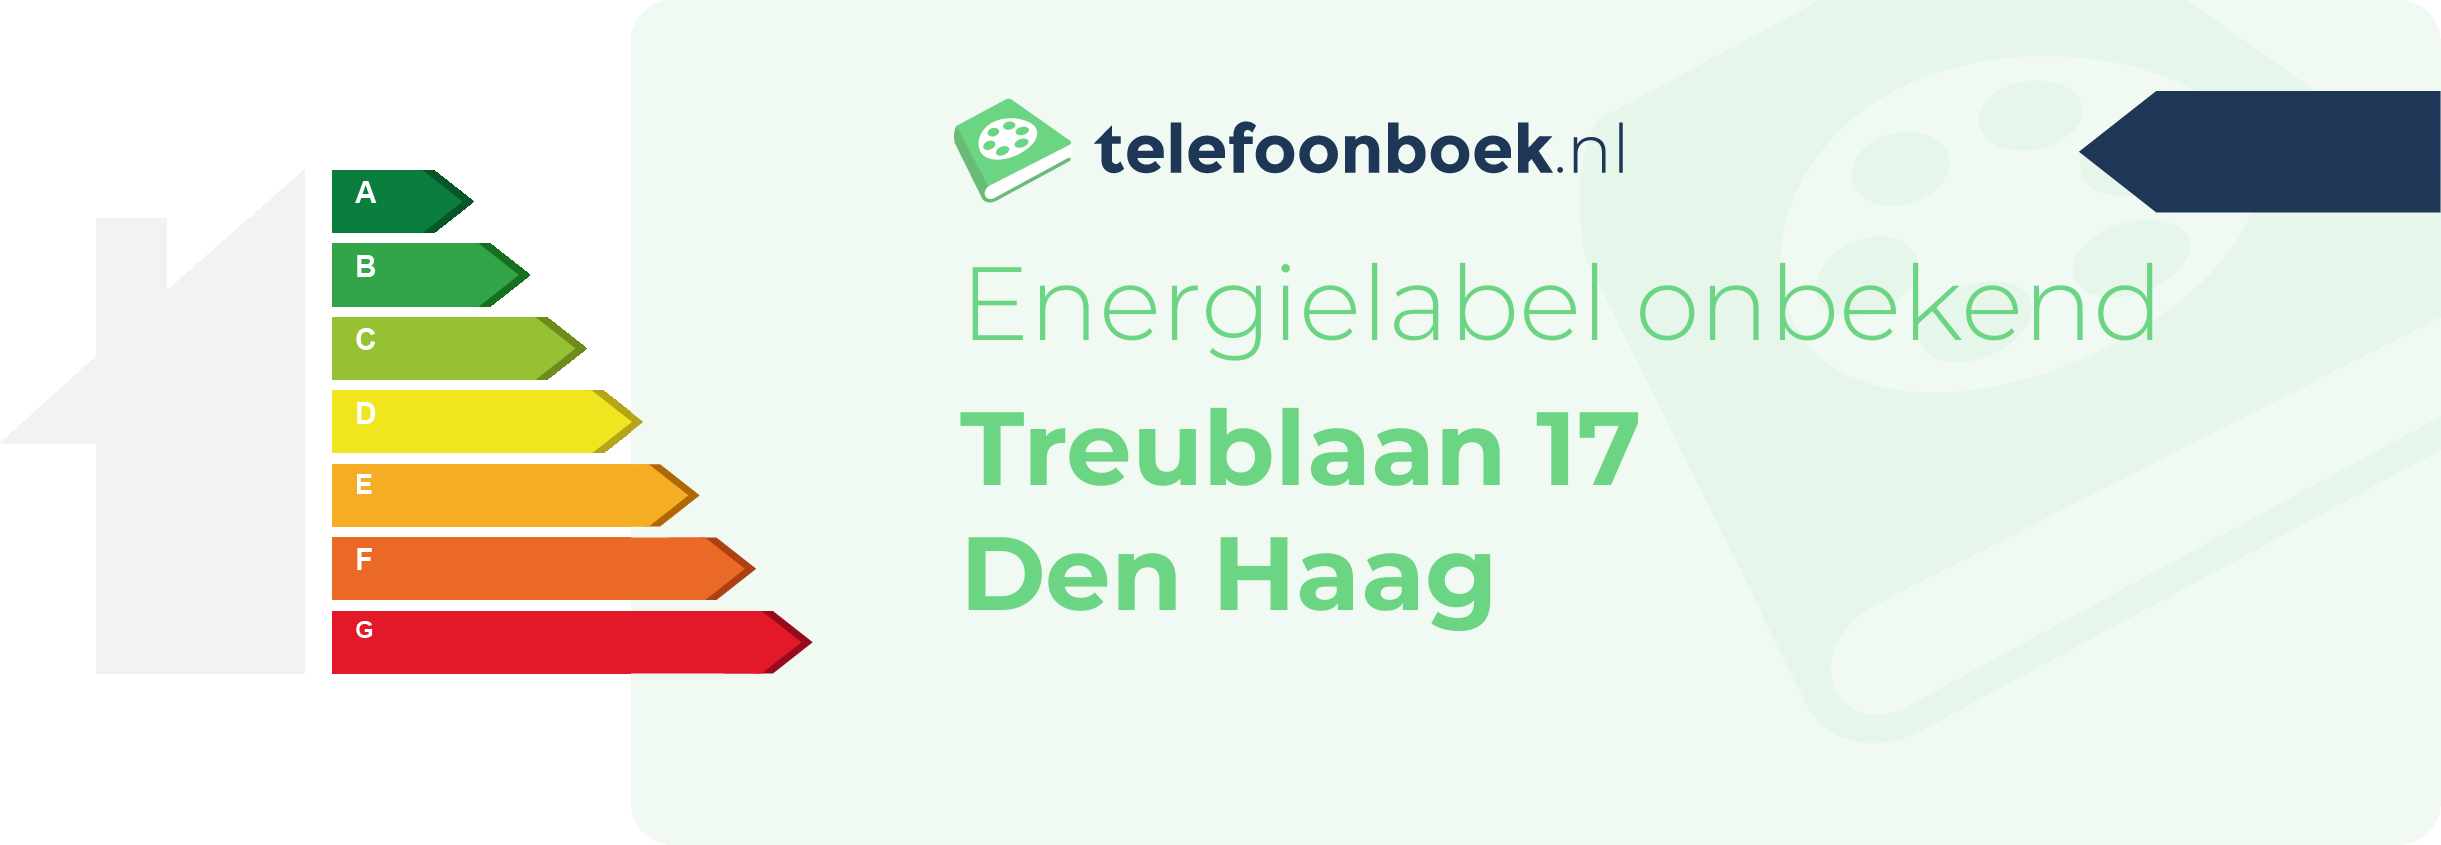 Energielabel Treublaan 17 Den Haag